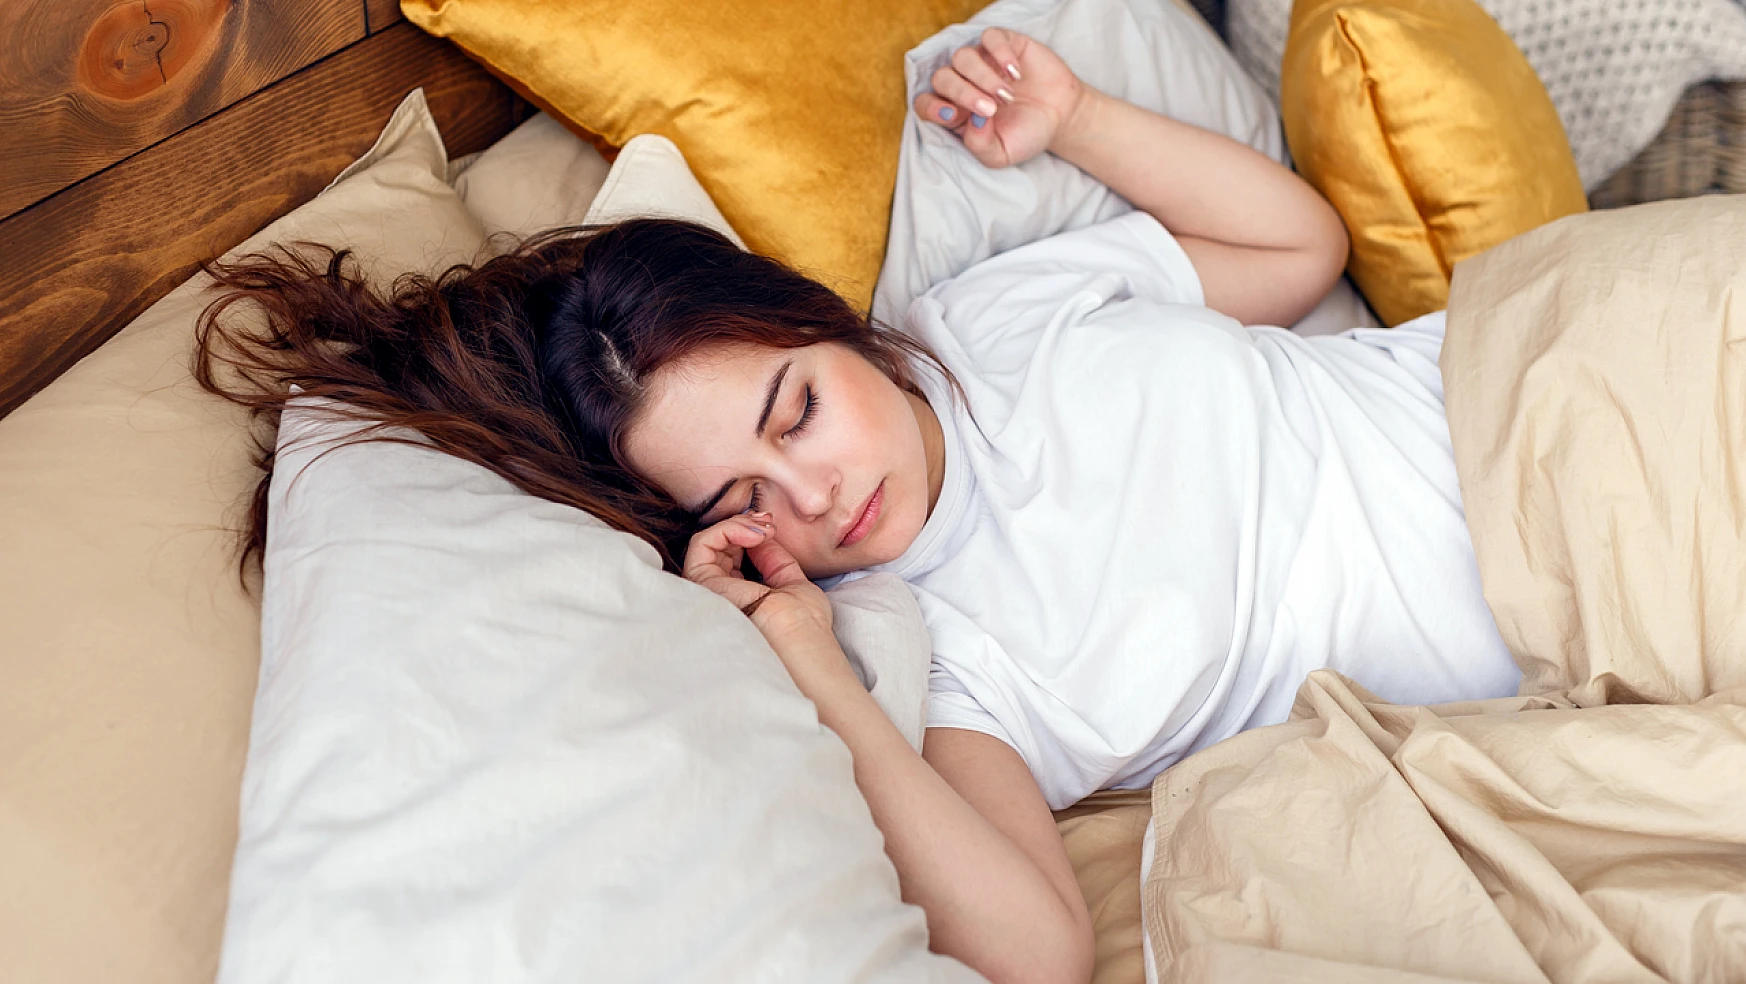 Anında Uyuyamayanlar: İşte En Son Sebep Ortaya Çıktı! Hayatınızdan Çıkarın Anında Mışıl Mışıl Uyuyun